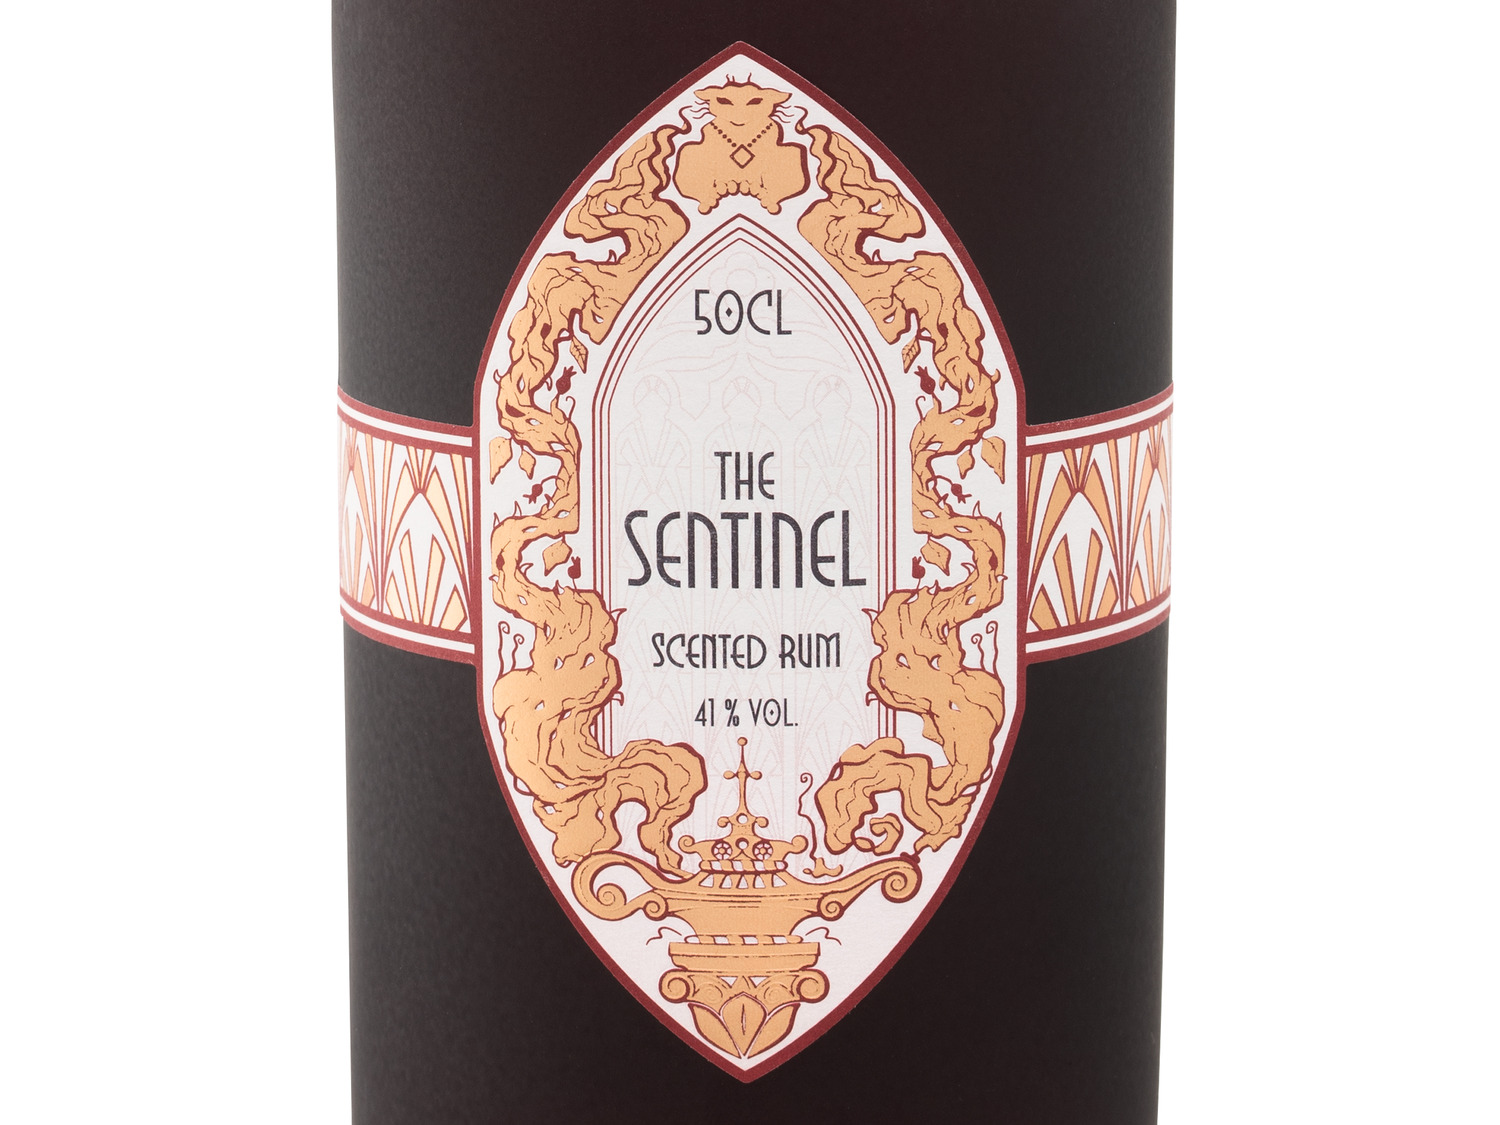 Scented BIO LIDL 41% Vol Rum The | Sentinel